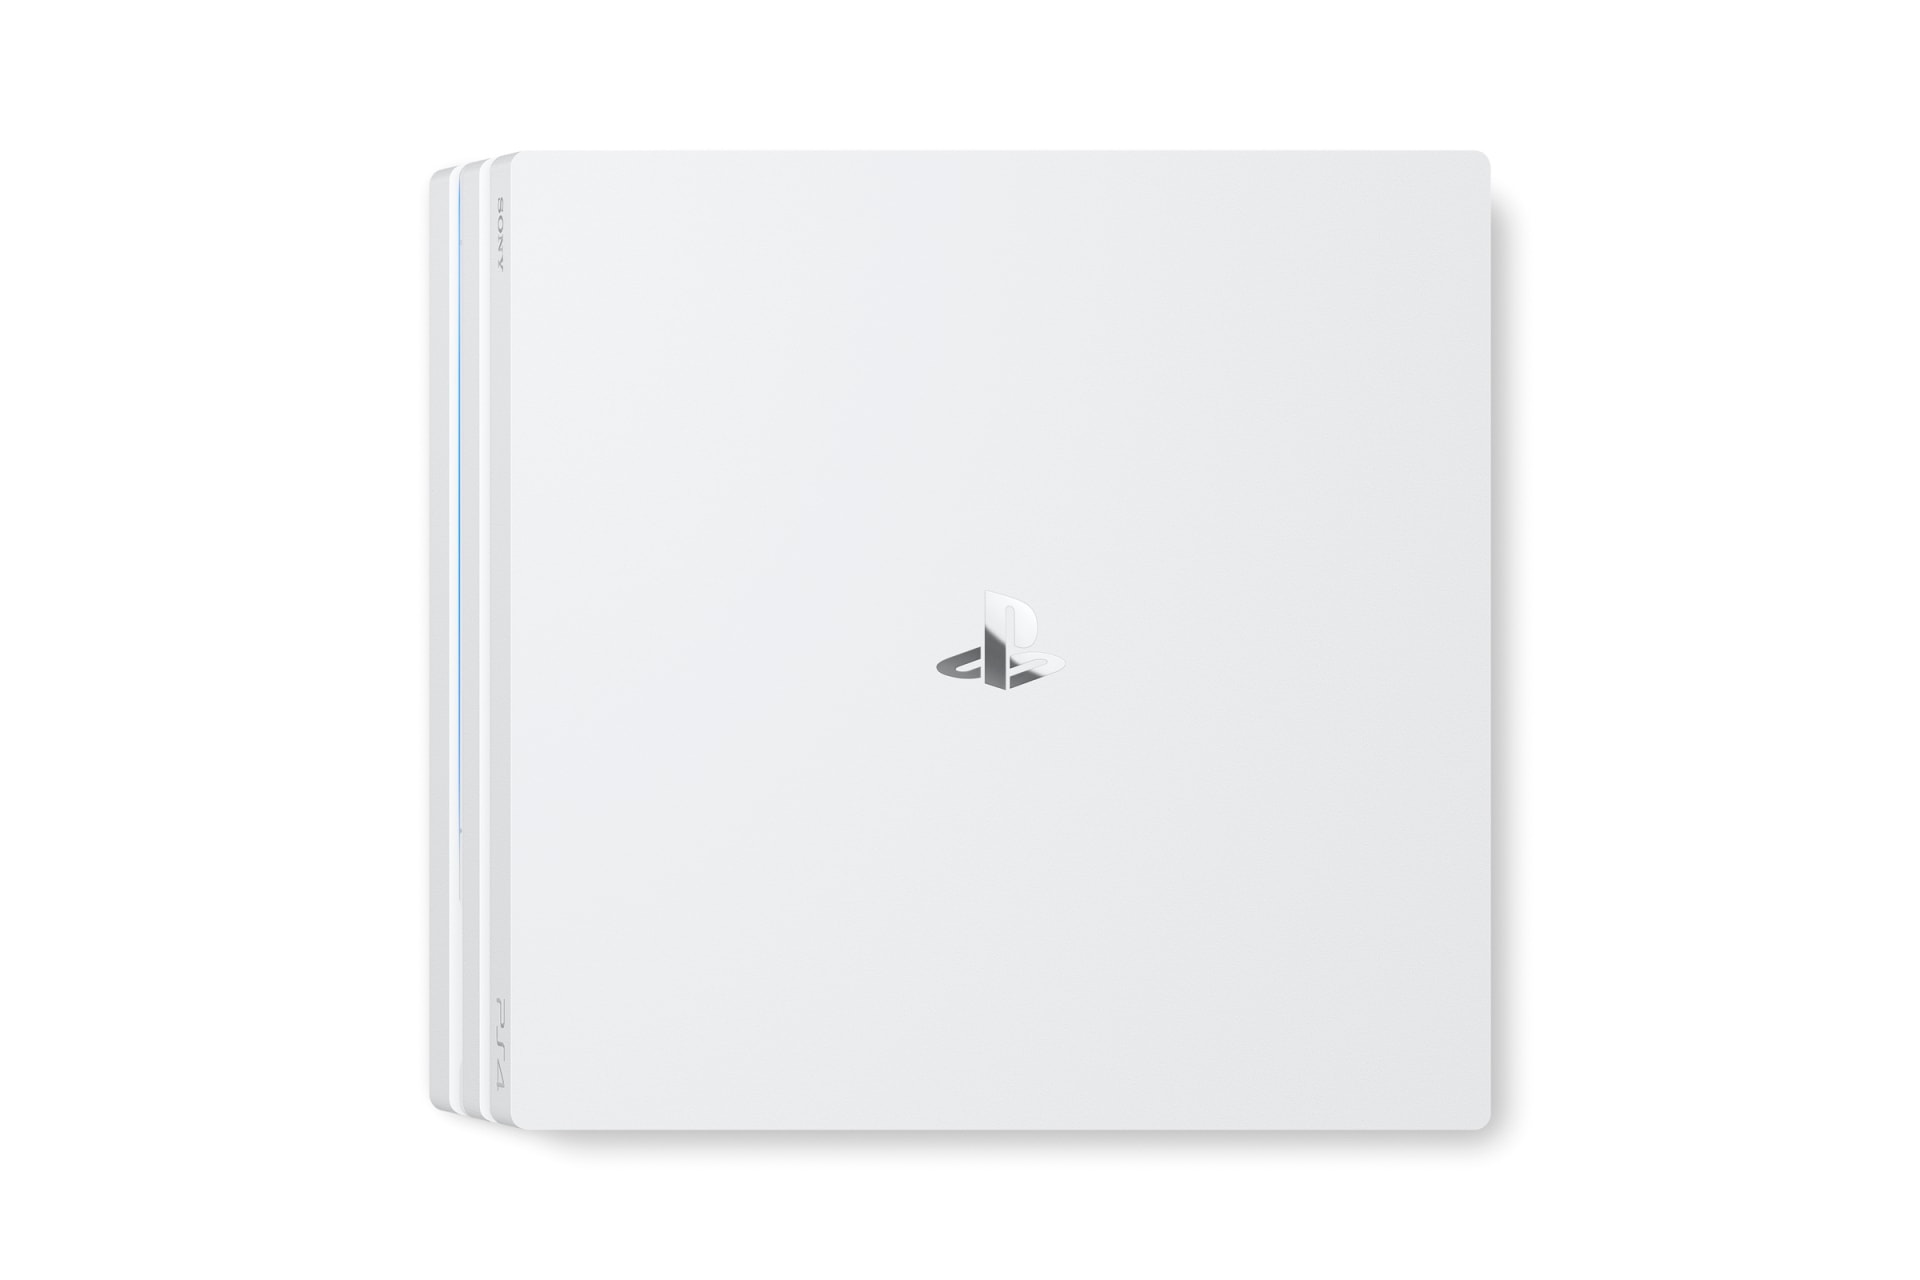 Sony PlayStation 4 Pro 推出全新「冰河白」配色